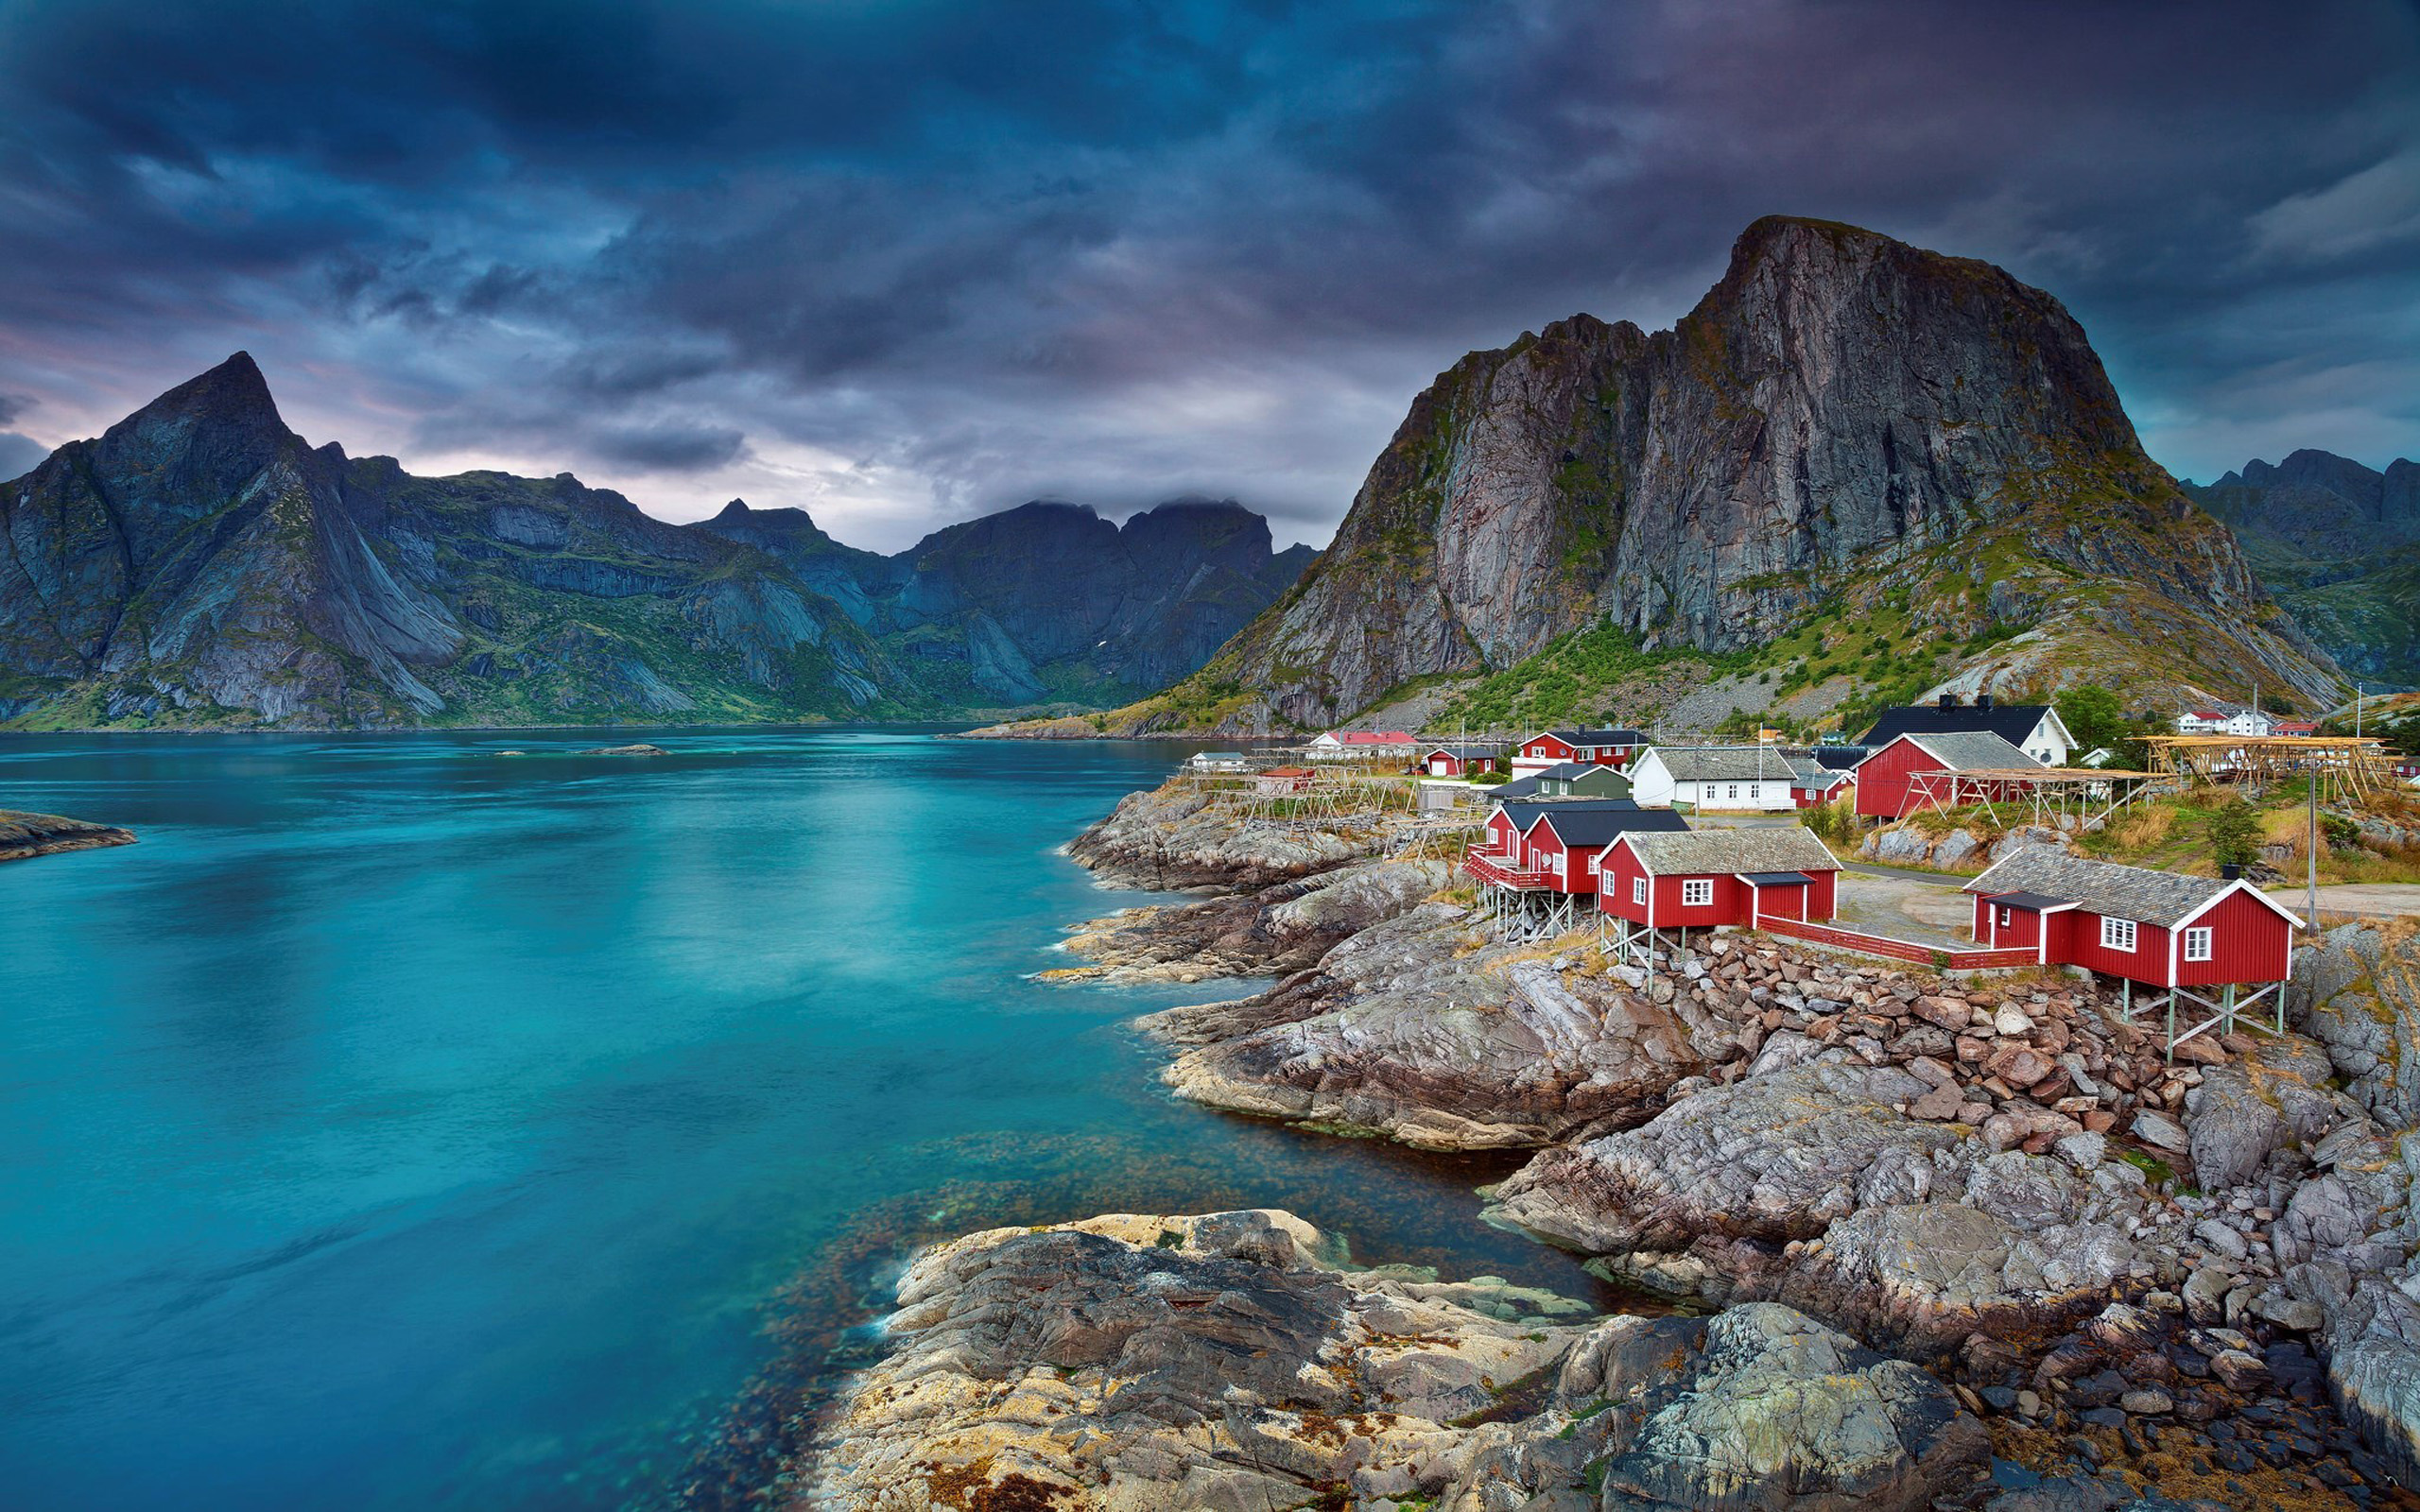 Lofoten Norway Summertime Images For Desktop Wallpaper 2560x1600 Wallpapers13 Com